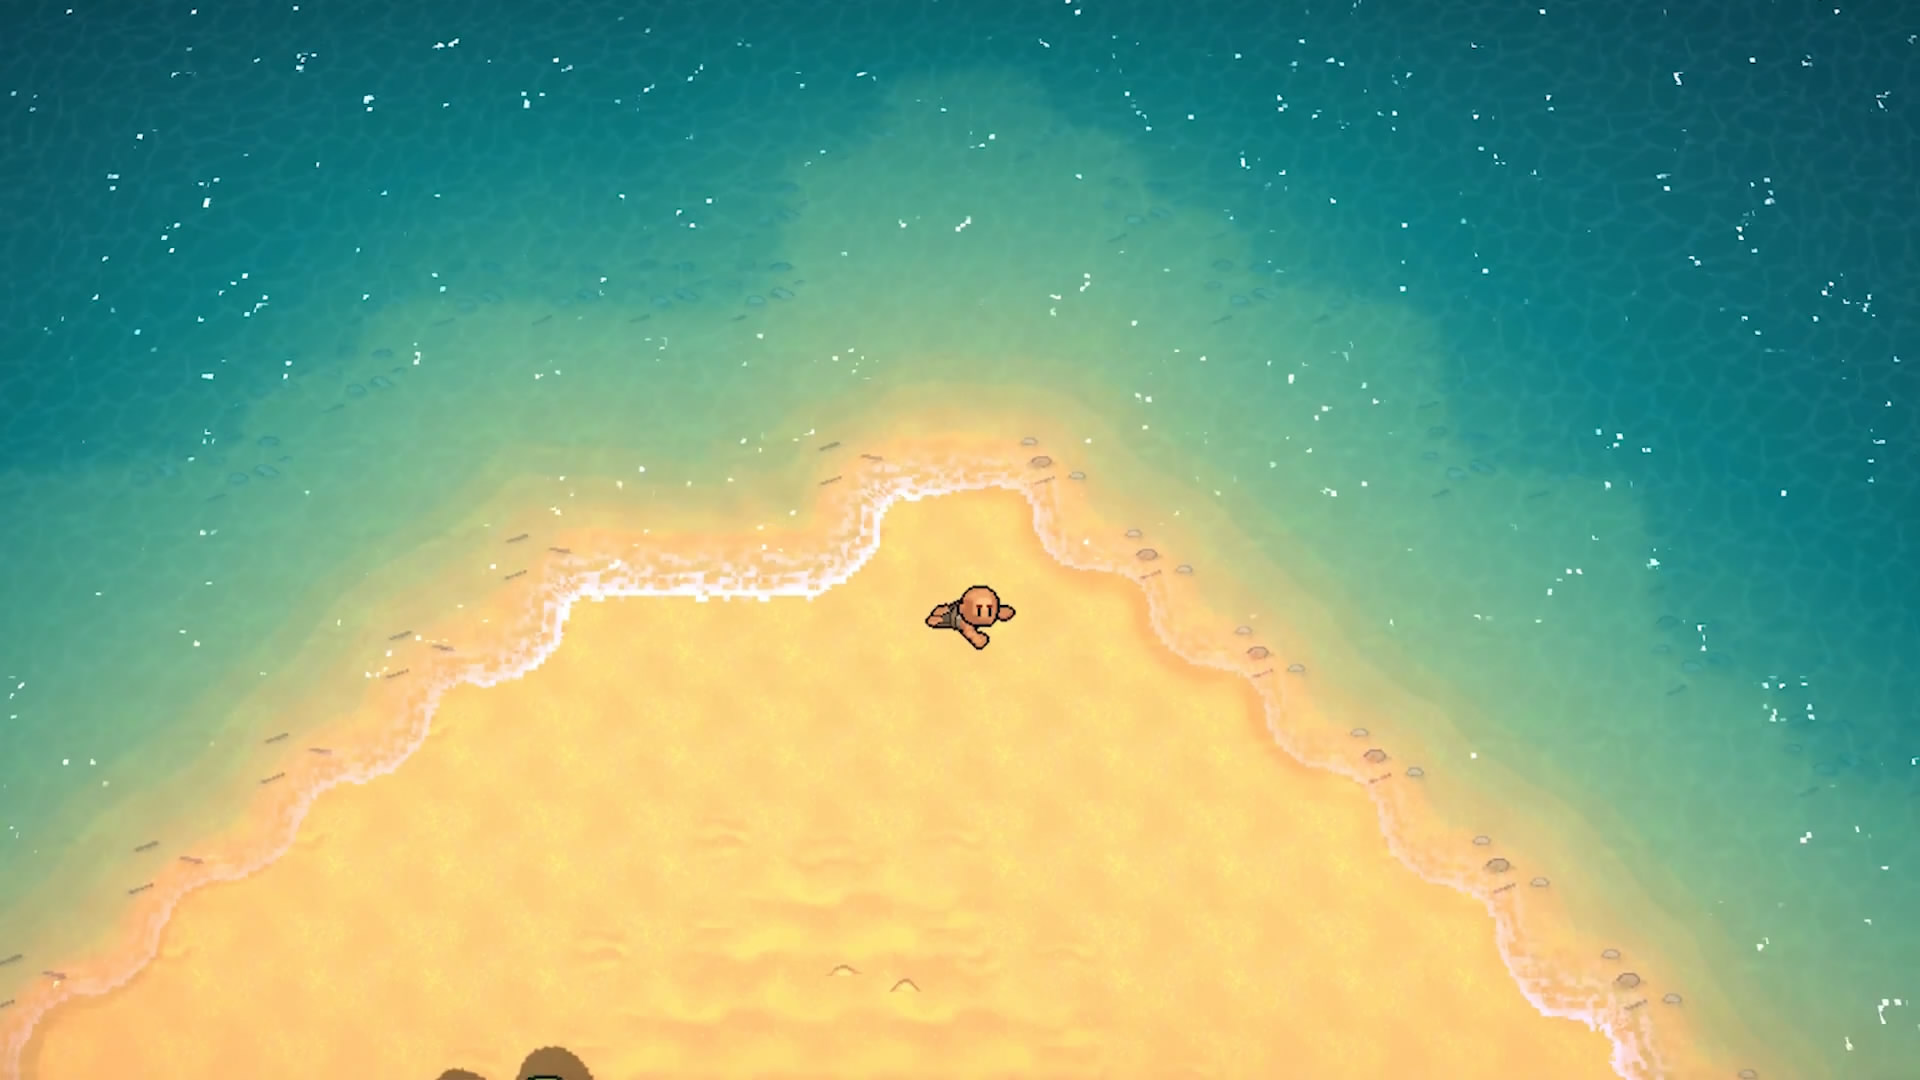 生存沙盒游戏《岛屿生存者》预告 2020年初发售